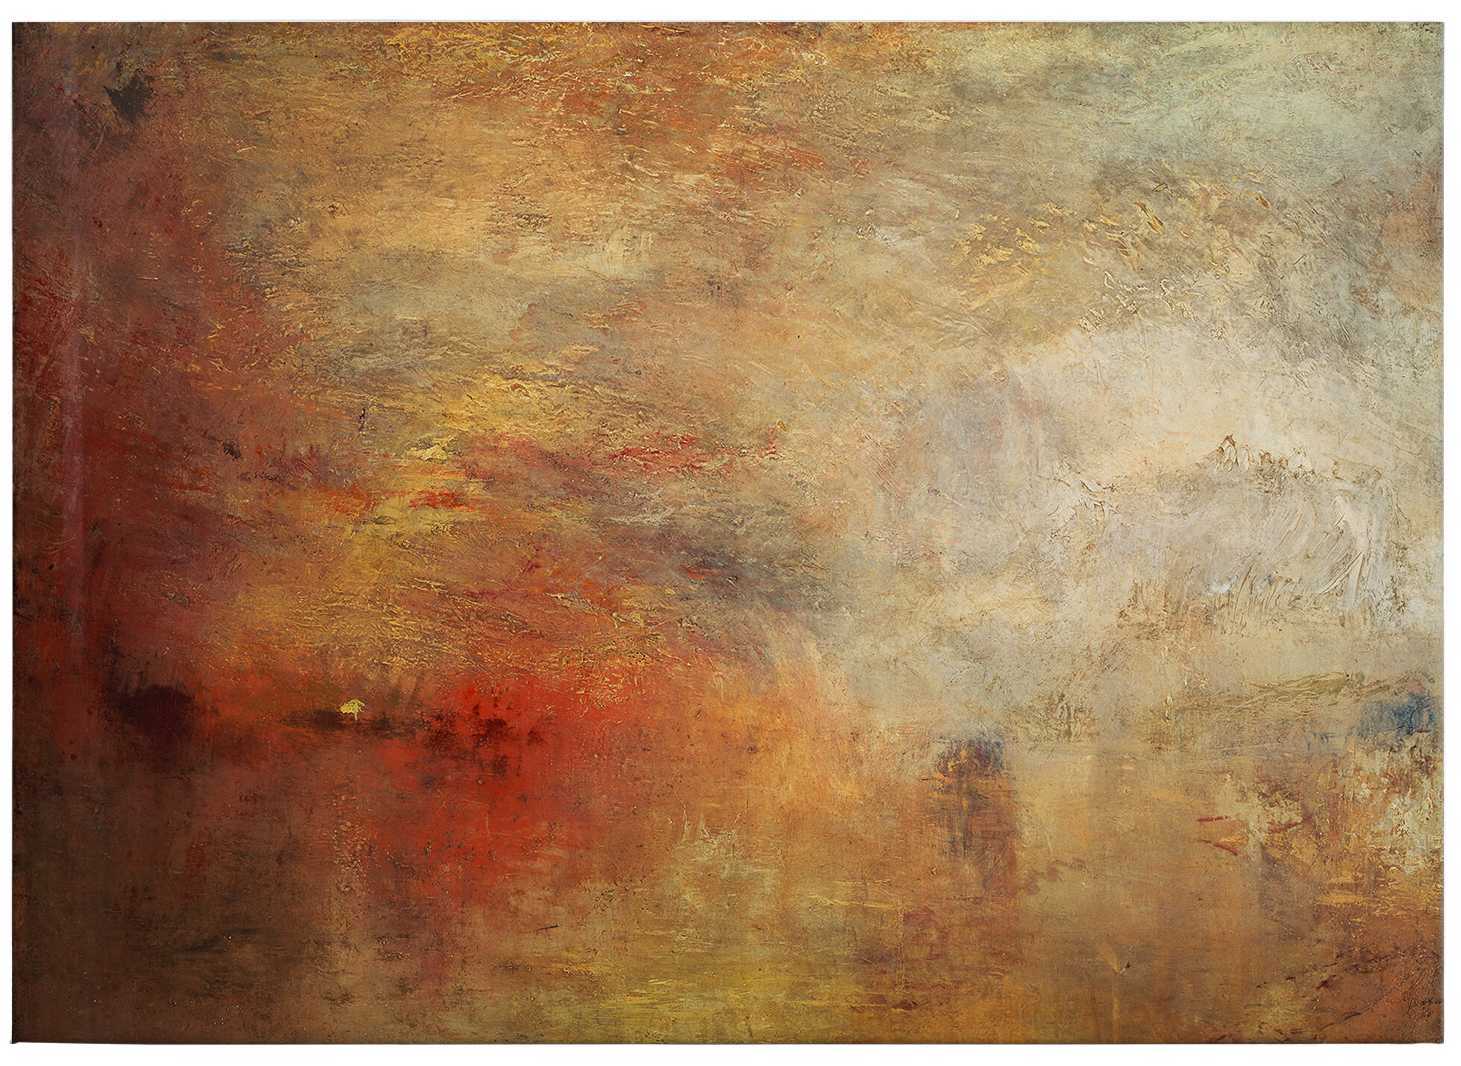             Leinwandbild von Turner "Sonnenuntergang über dem Meer" – 0,70 m x 0,50 m
        